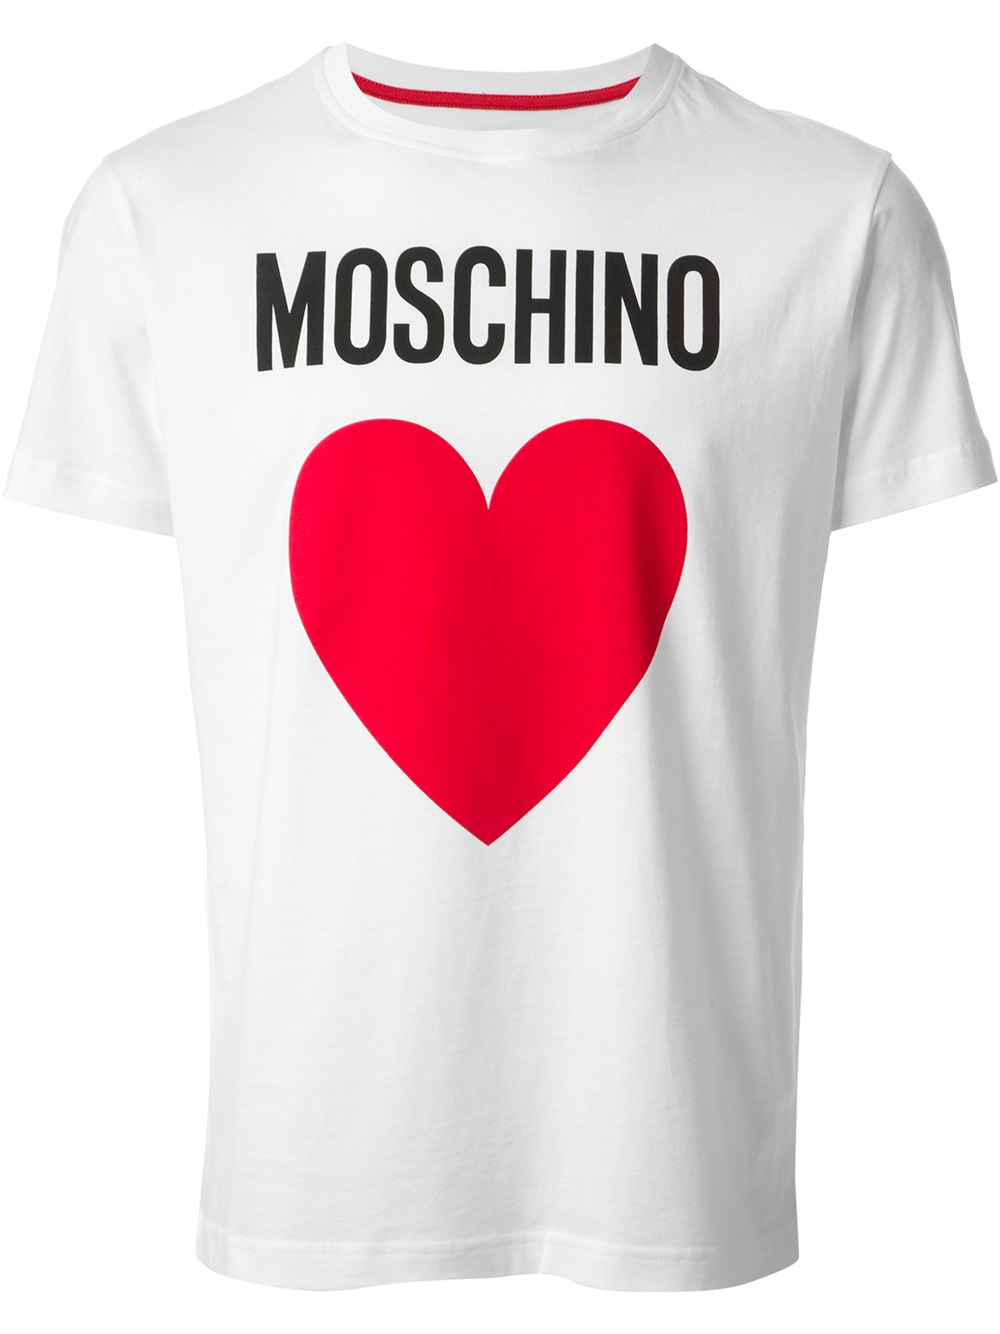 white and red moschino t shirt